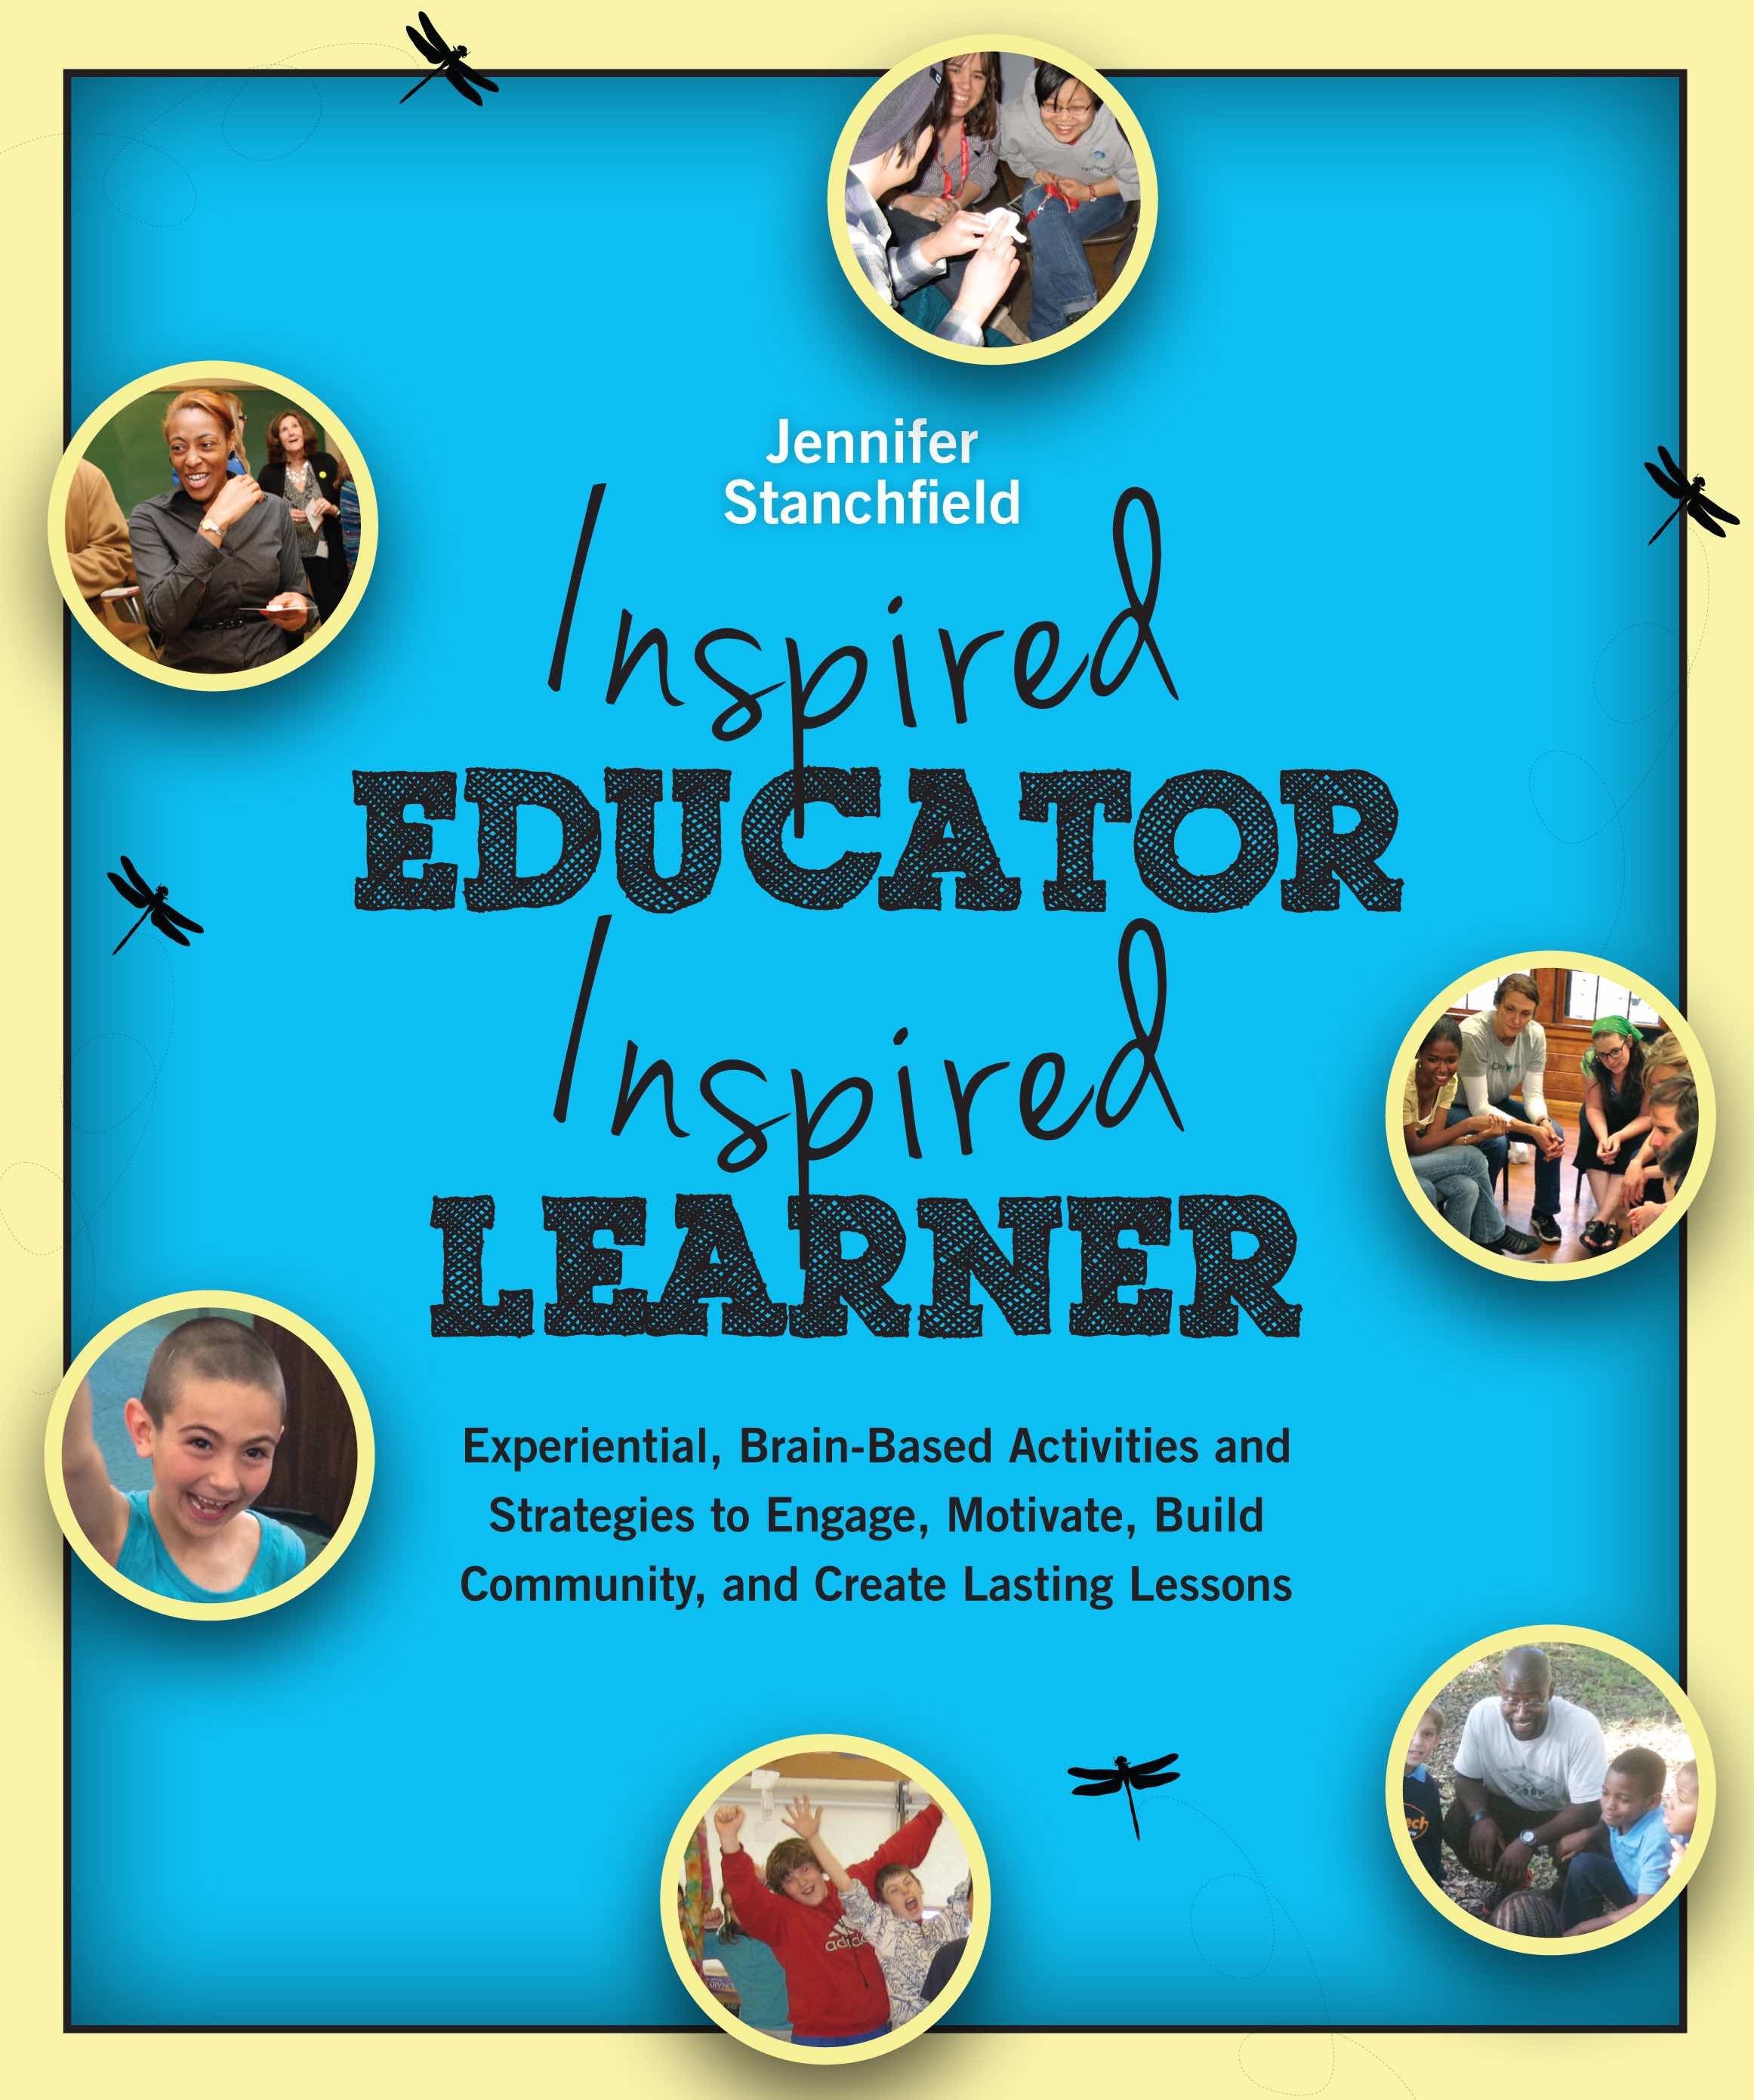 Inspired Educator, Inspired Learner Workshop for Teachers St. Louis, MO